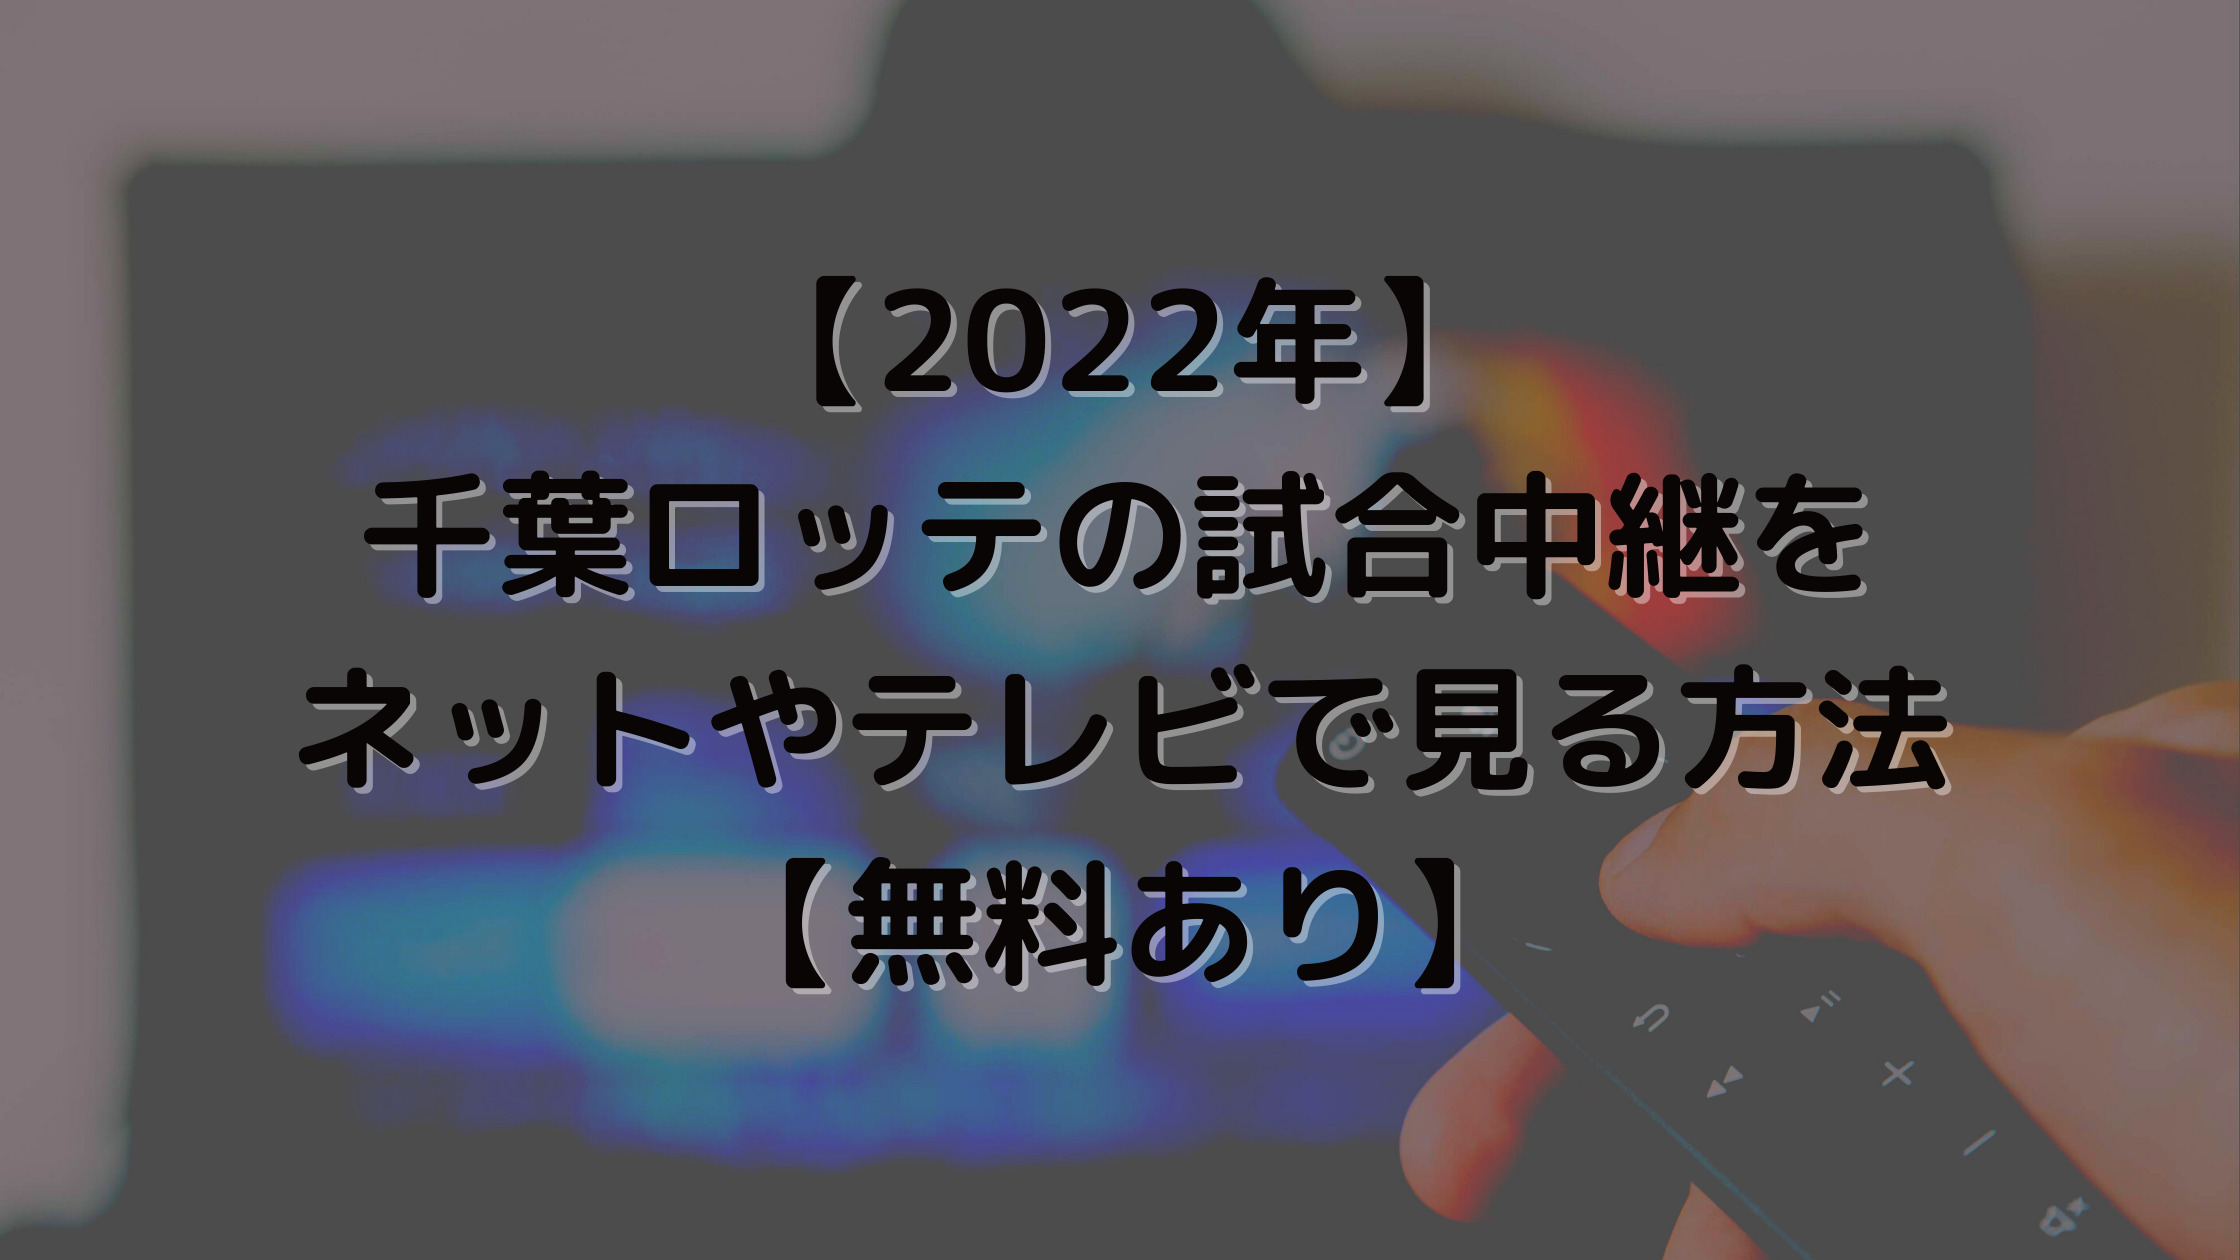 【2022年】千葉ロッテの試合中継をネットやテレビで見る方法【無料あり】